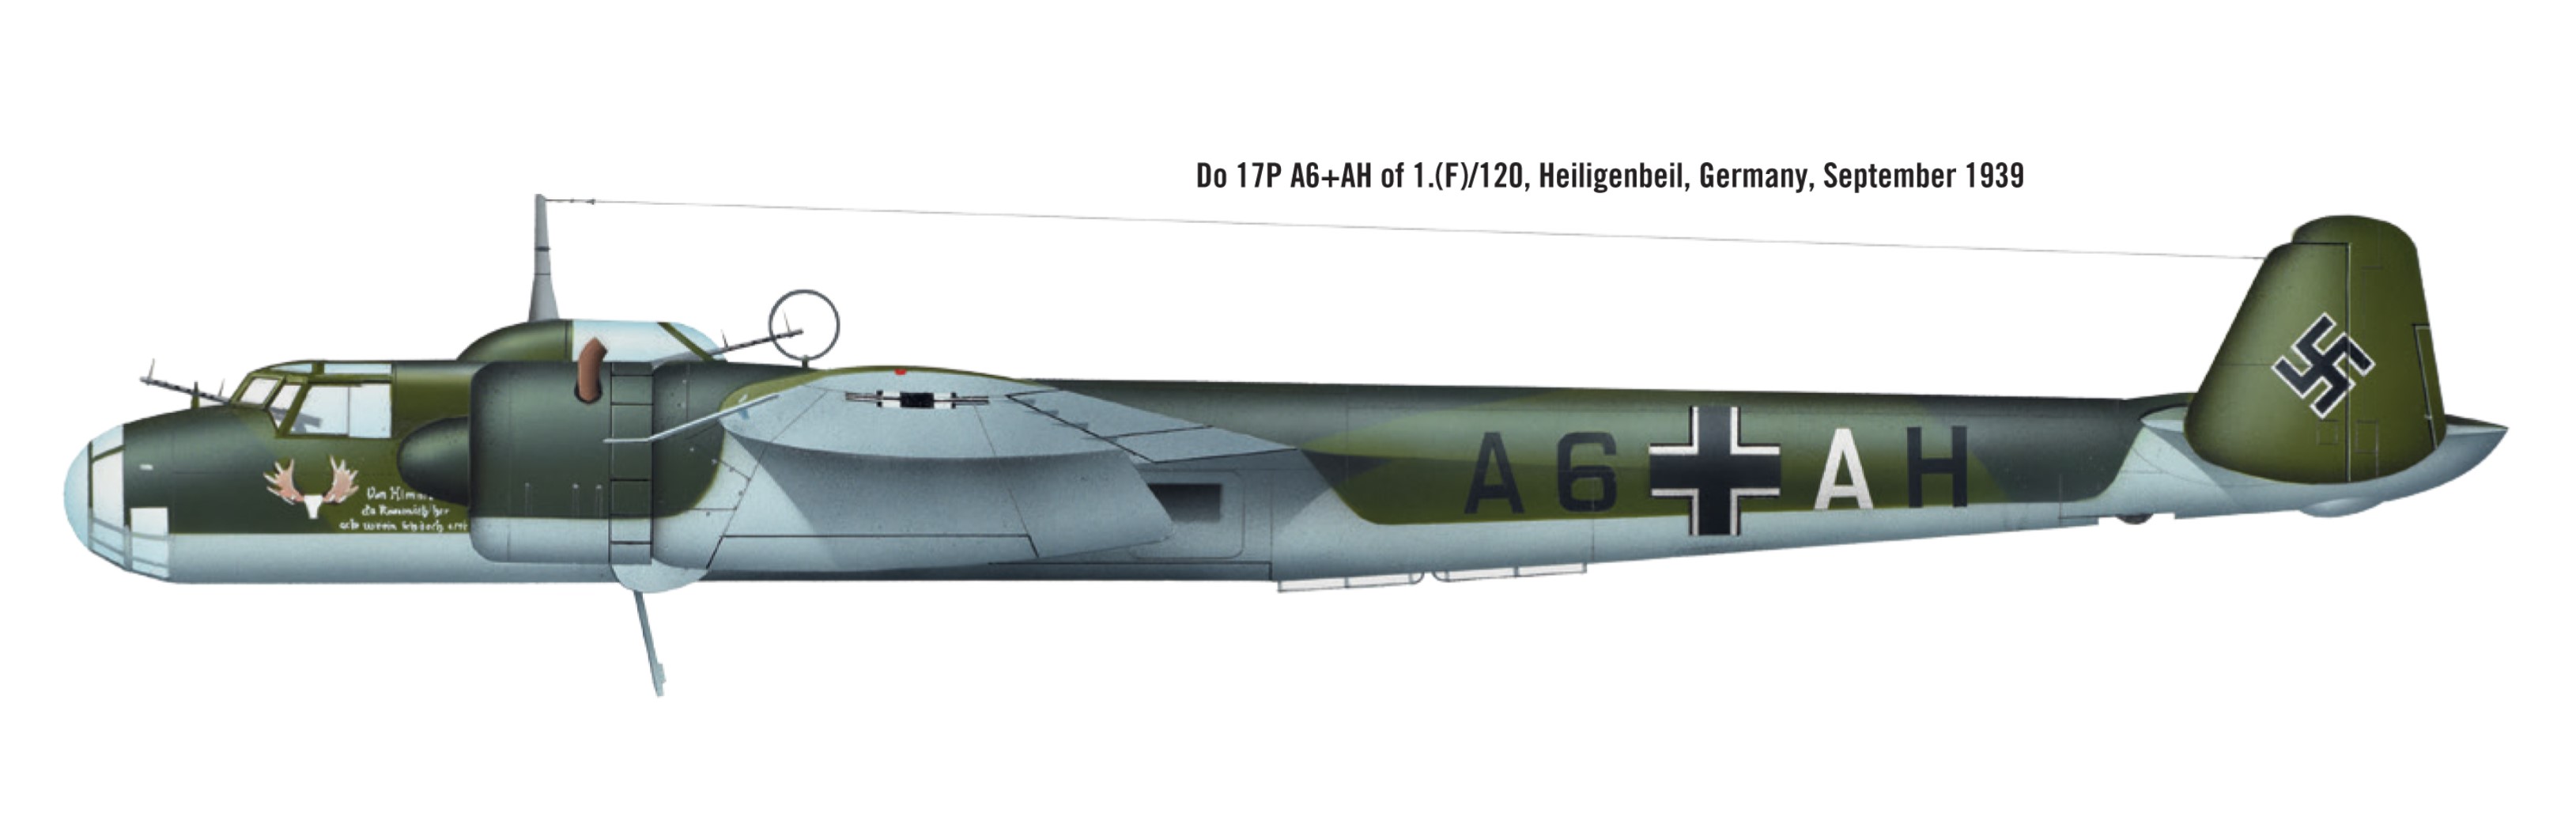 Dornier Do 17P 1.(F)AufklGr120 A6+AH Heiligenbeil Germany Sep 1939